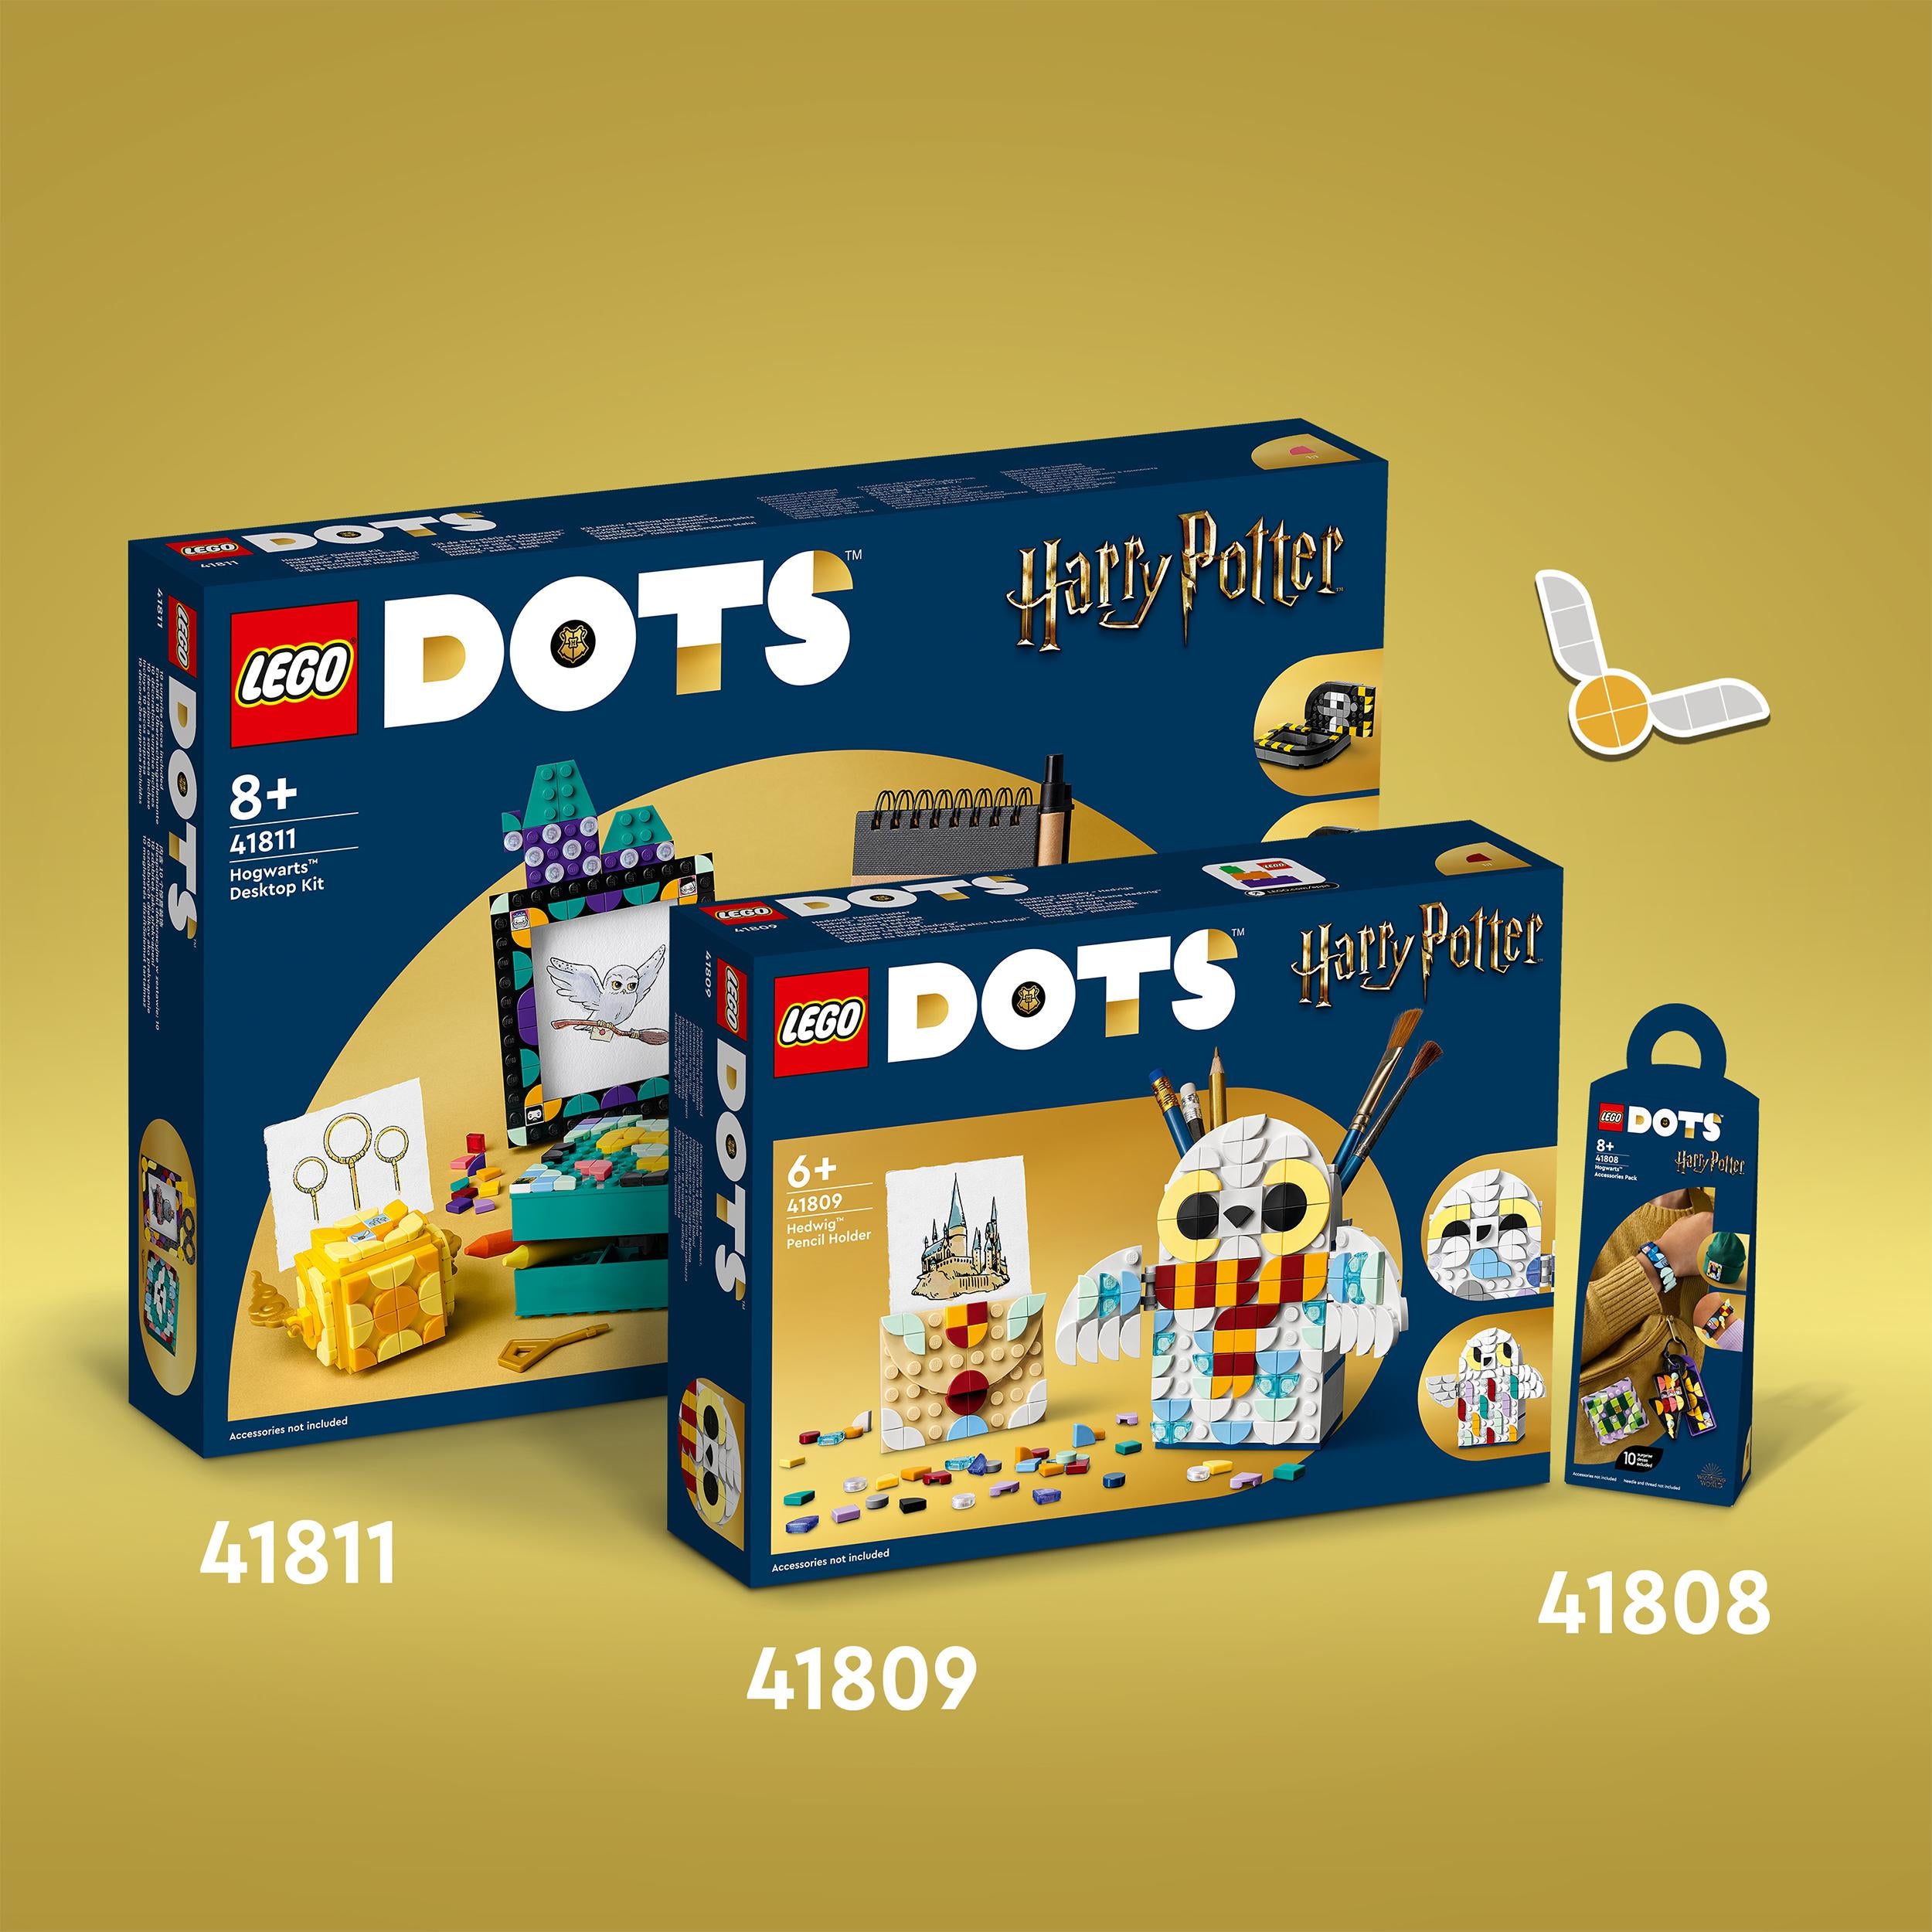 41808 - Lego - DOTS - HOGWARTS